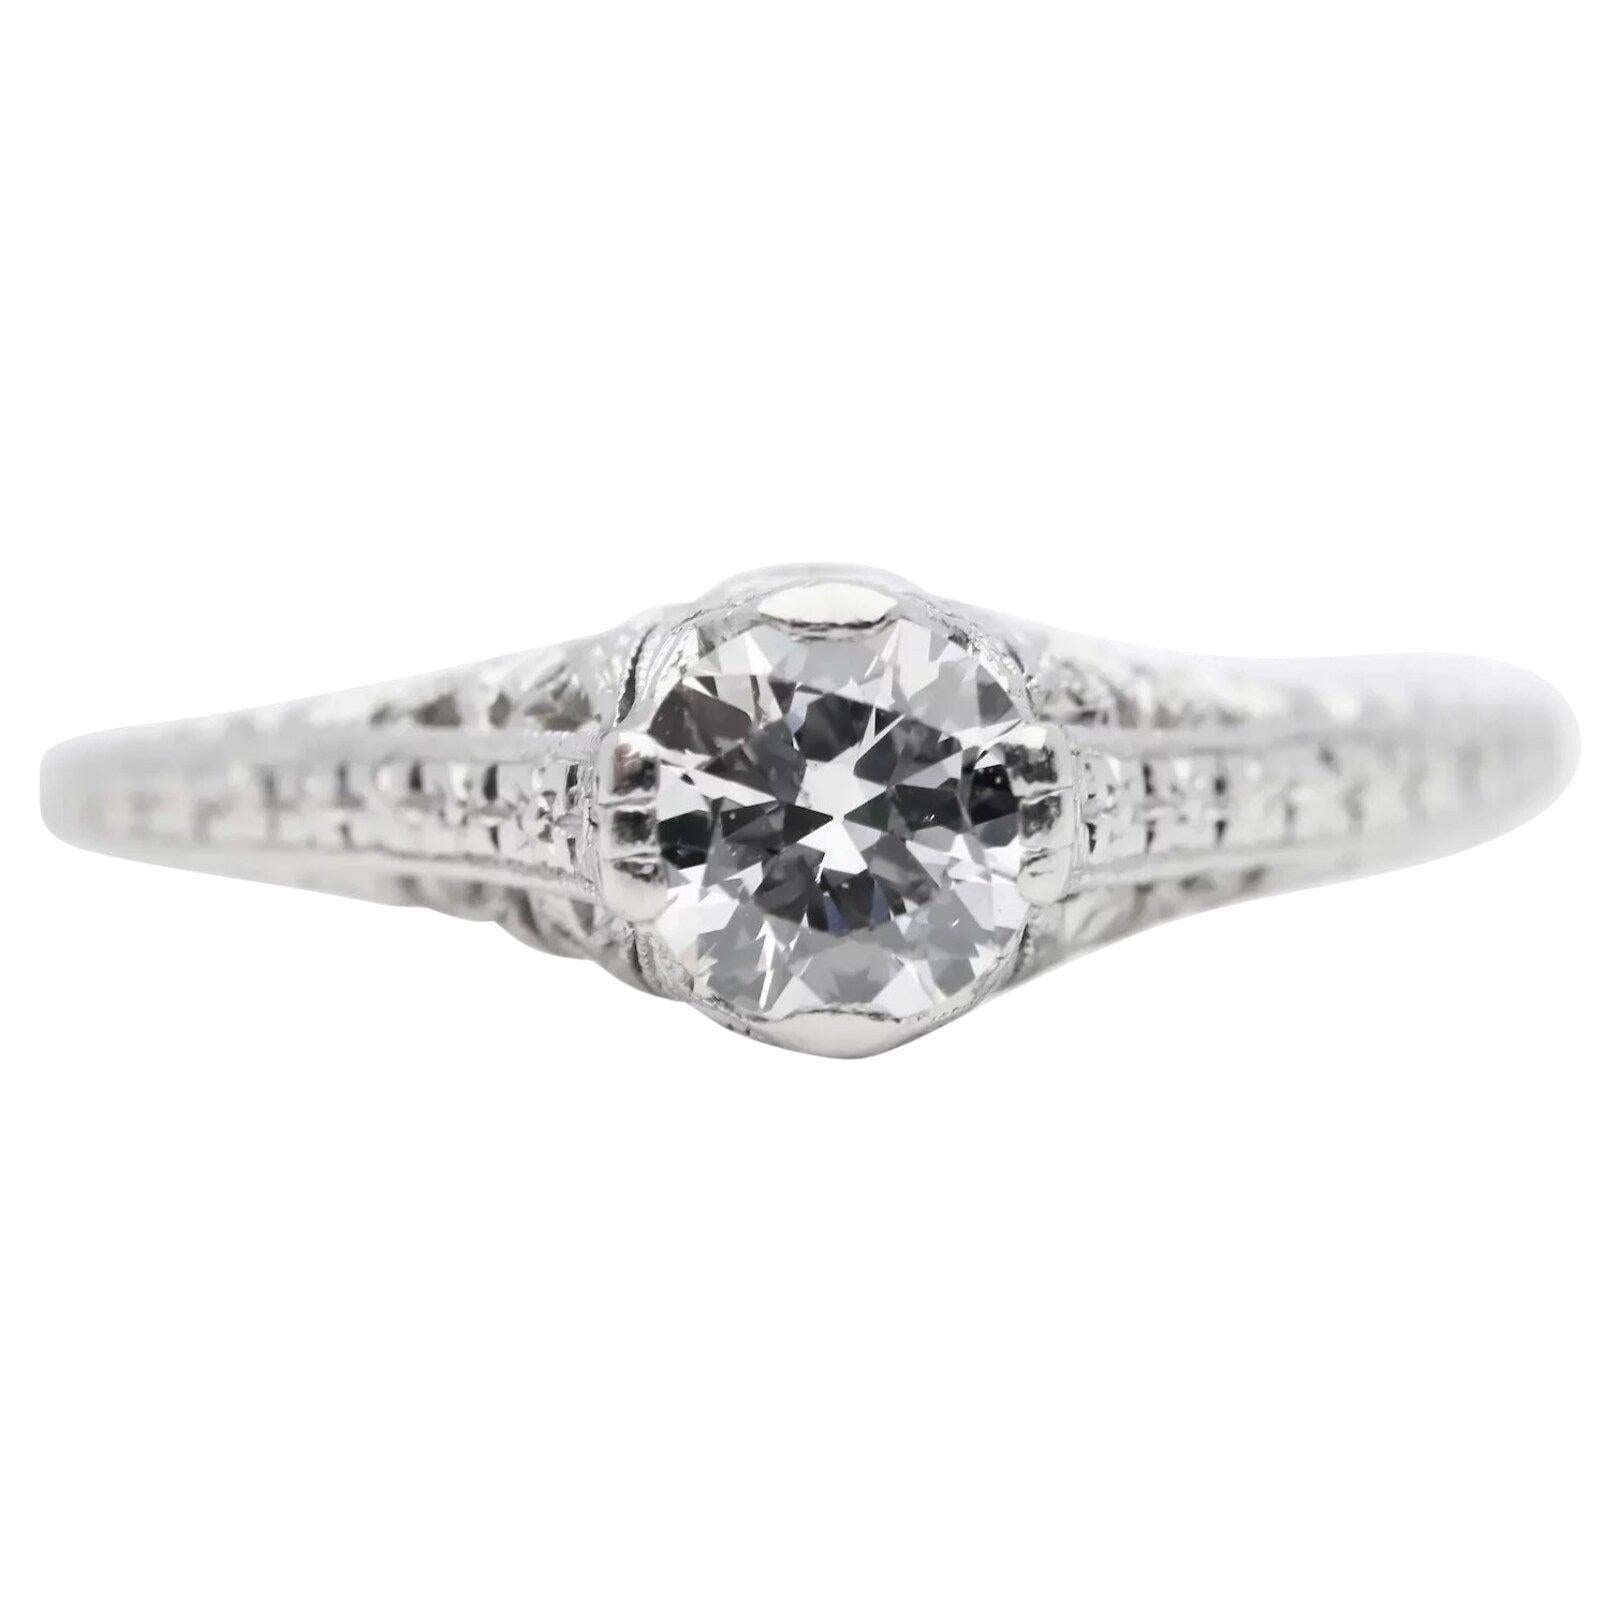 Hand Engraved Art Deco 0.60 Carat Diamond Solitare Engagement Ring in Platinum